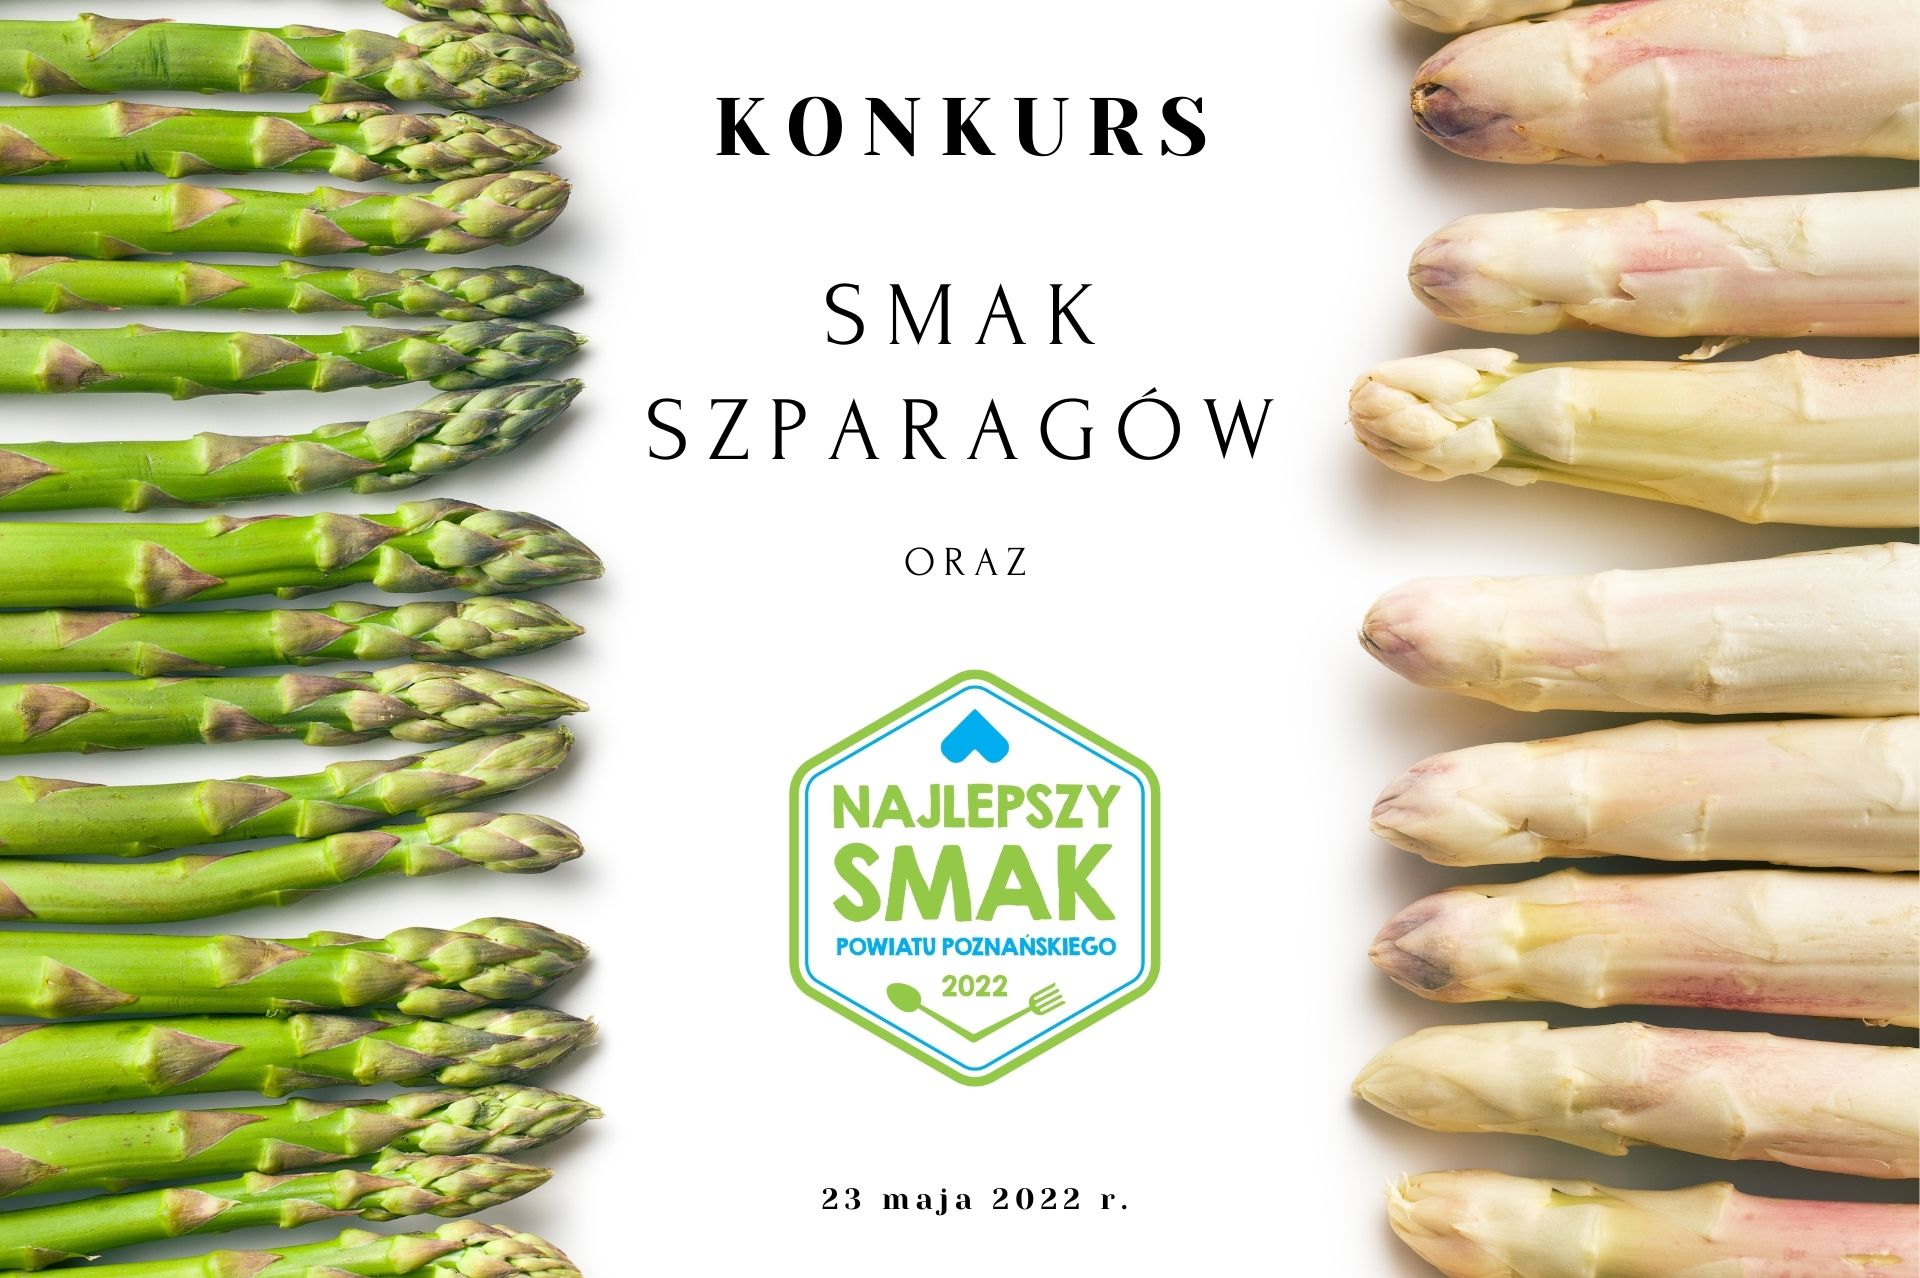 Konkurs szparagowy dla restauracji z Wielkopolski 